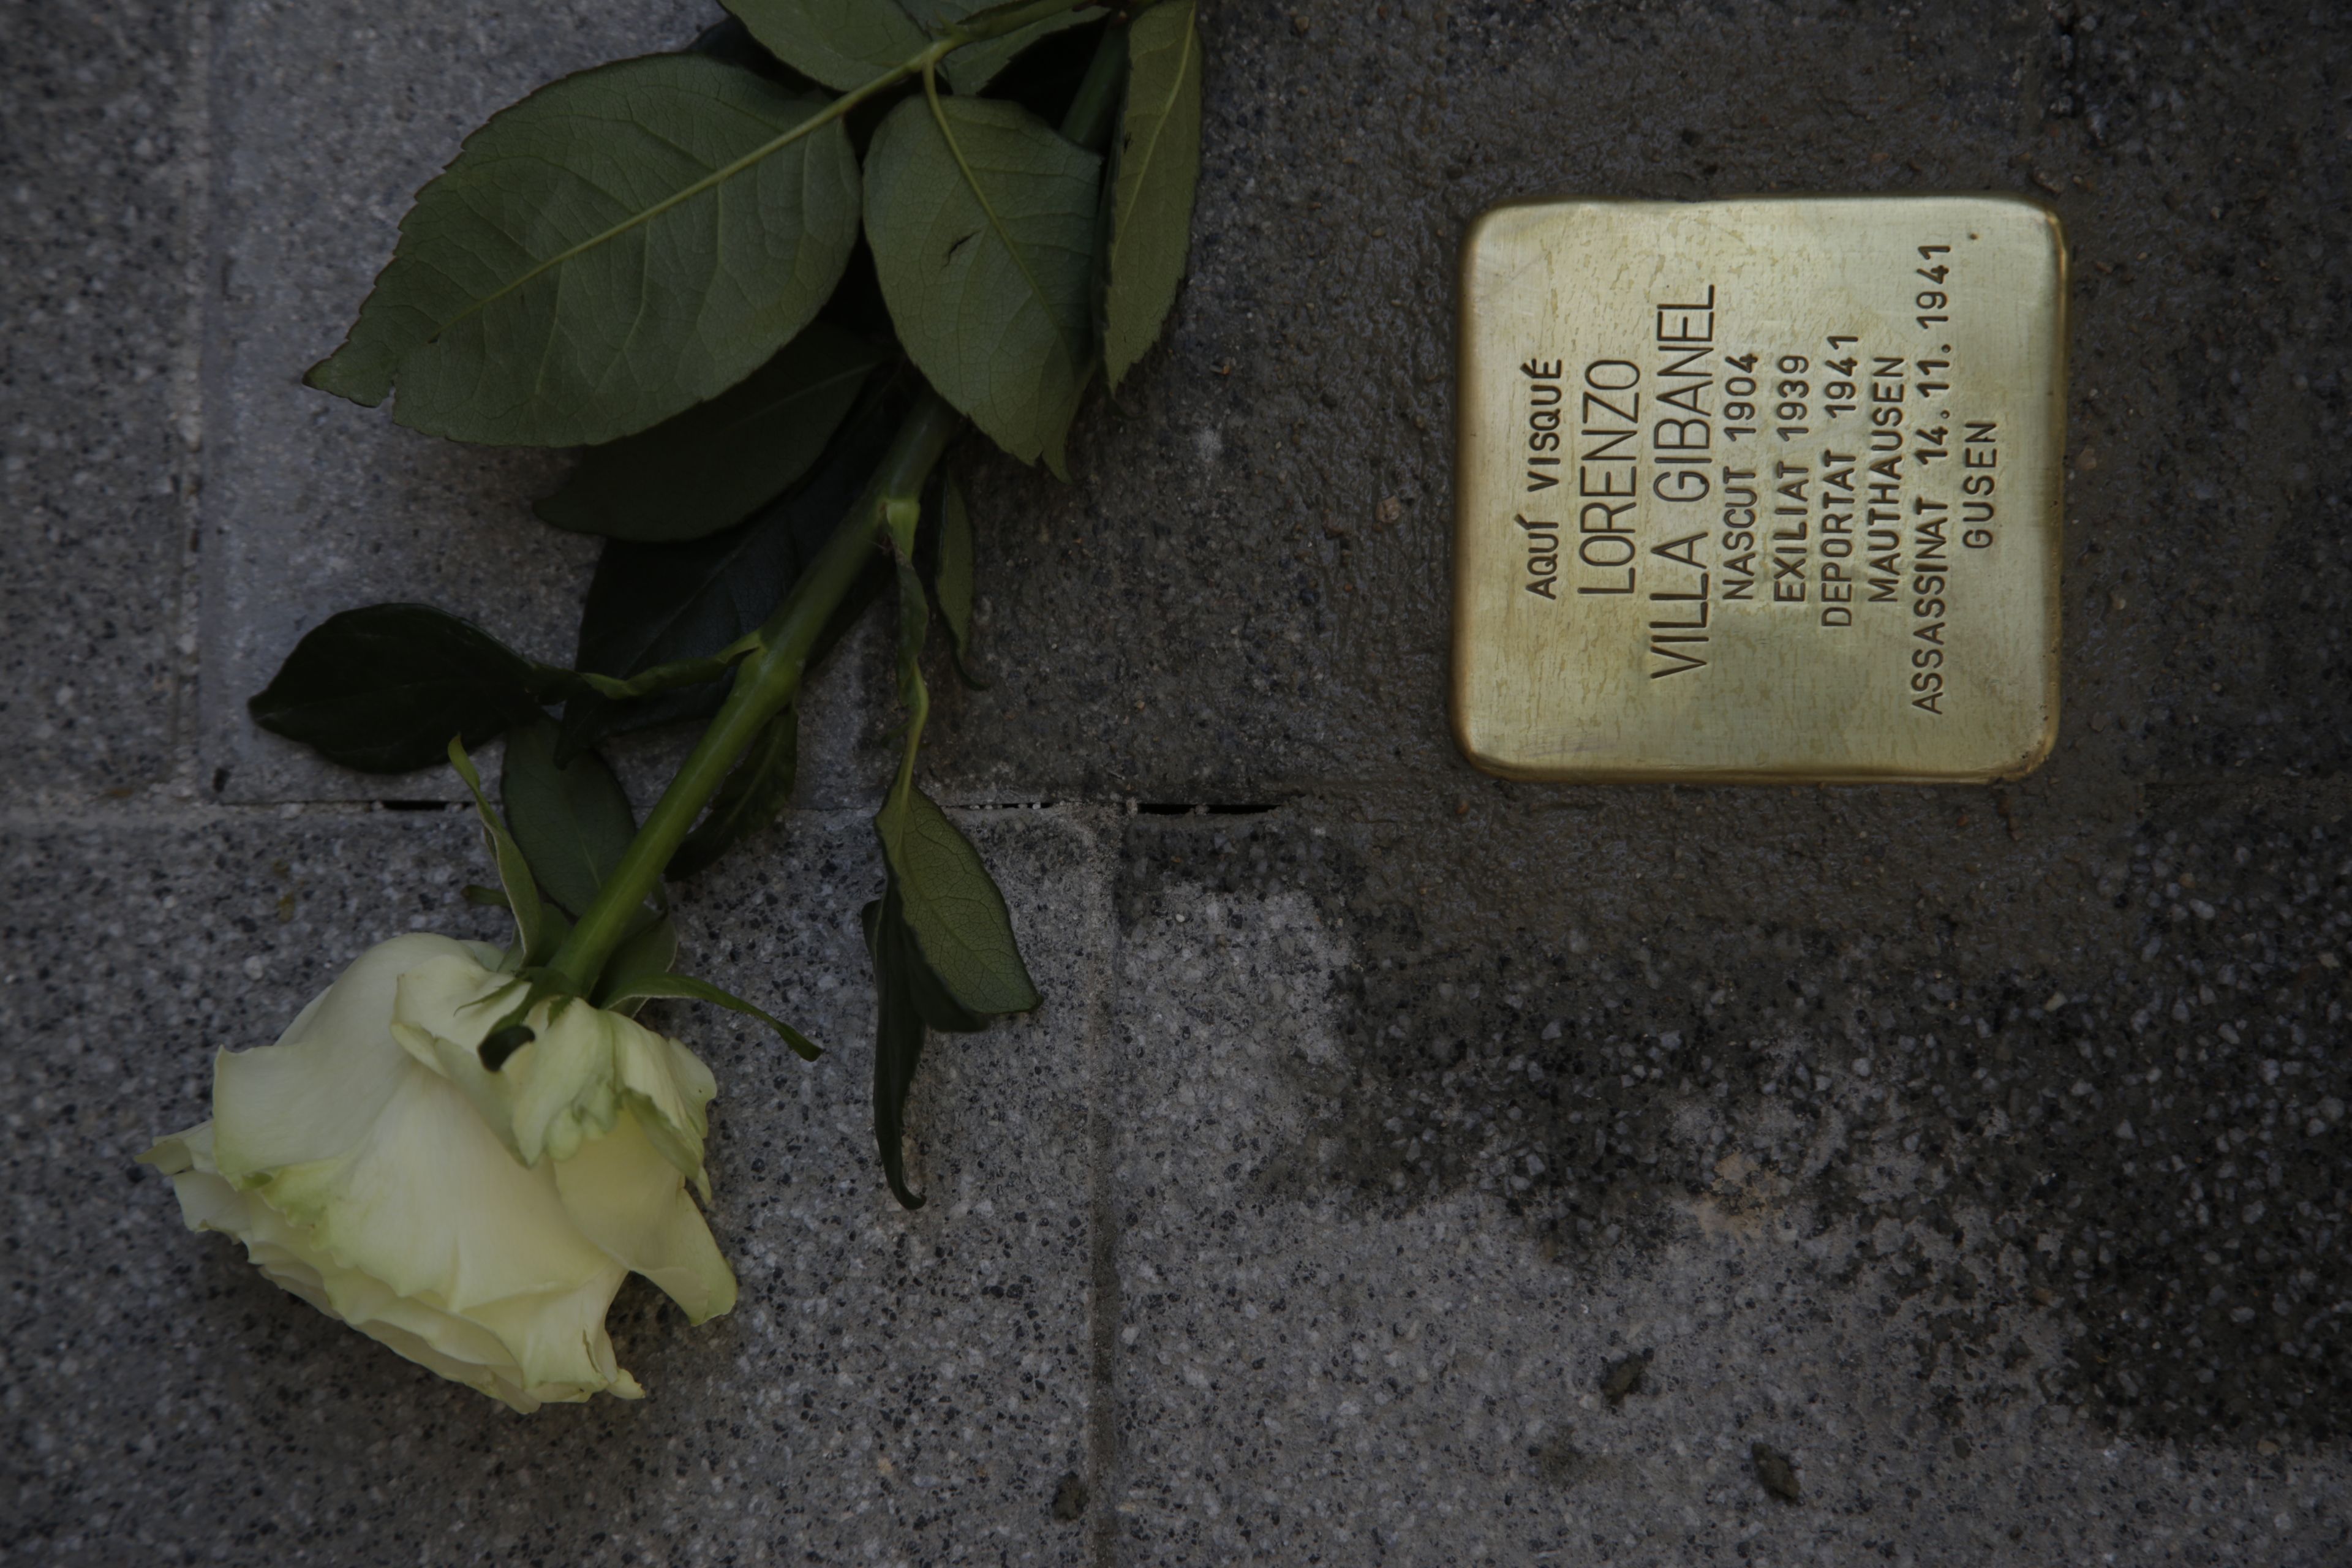 Sant Cugat ret homenatge als santcugatencs que van ser deportats a camps de concentració nazis. FOTO: Àngel Bravo